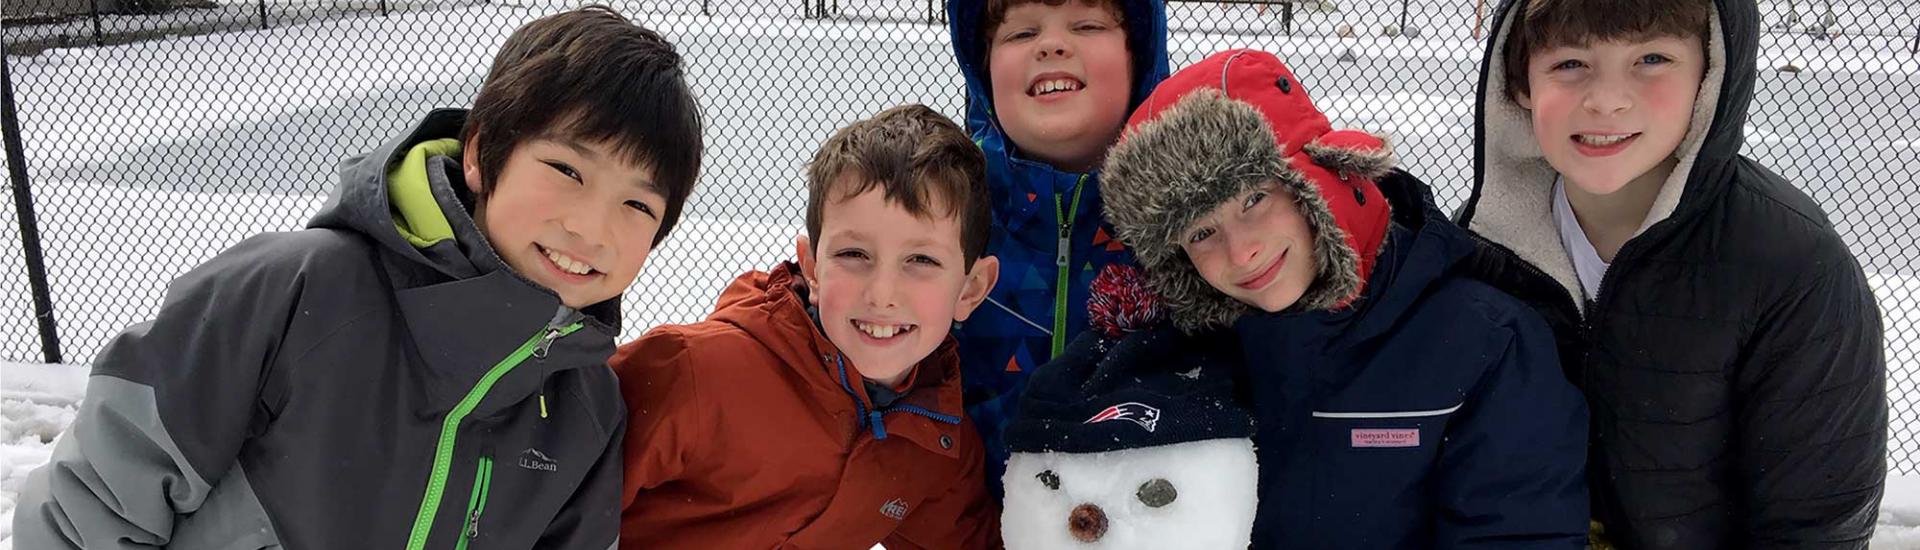 Five boys make a snowman